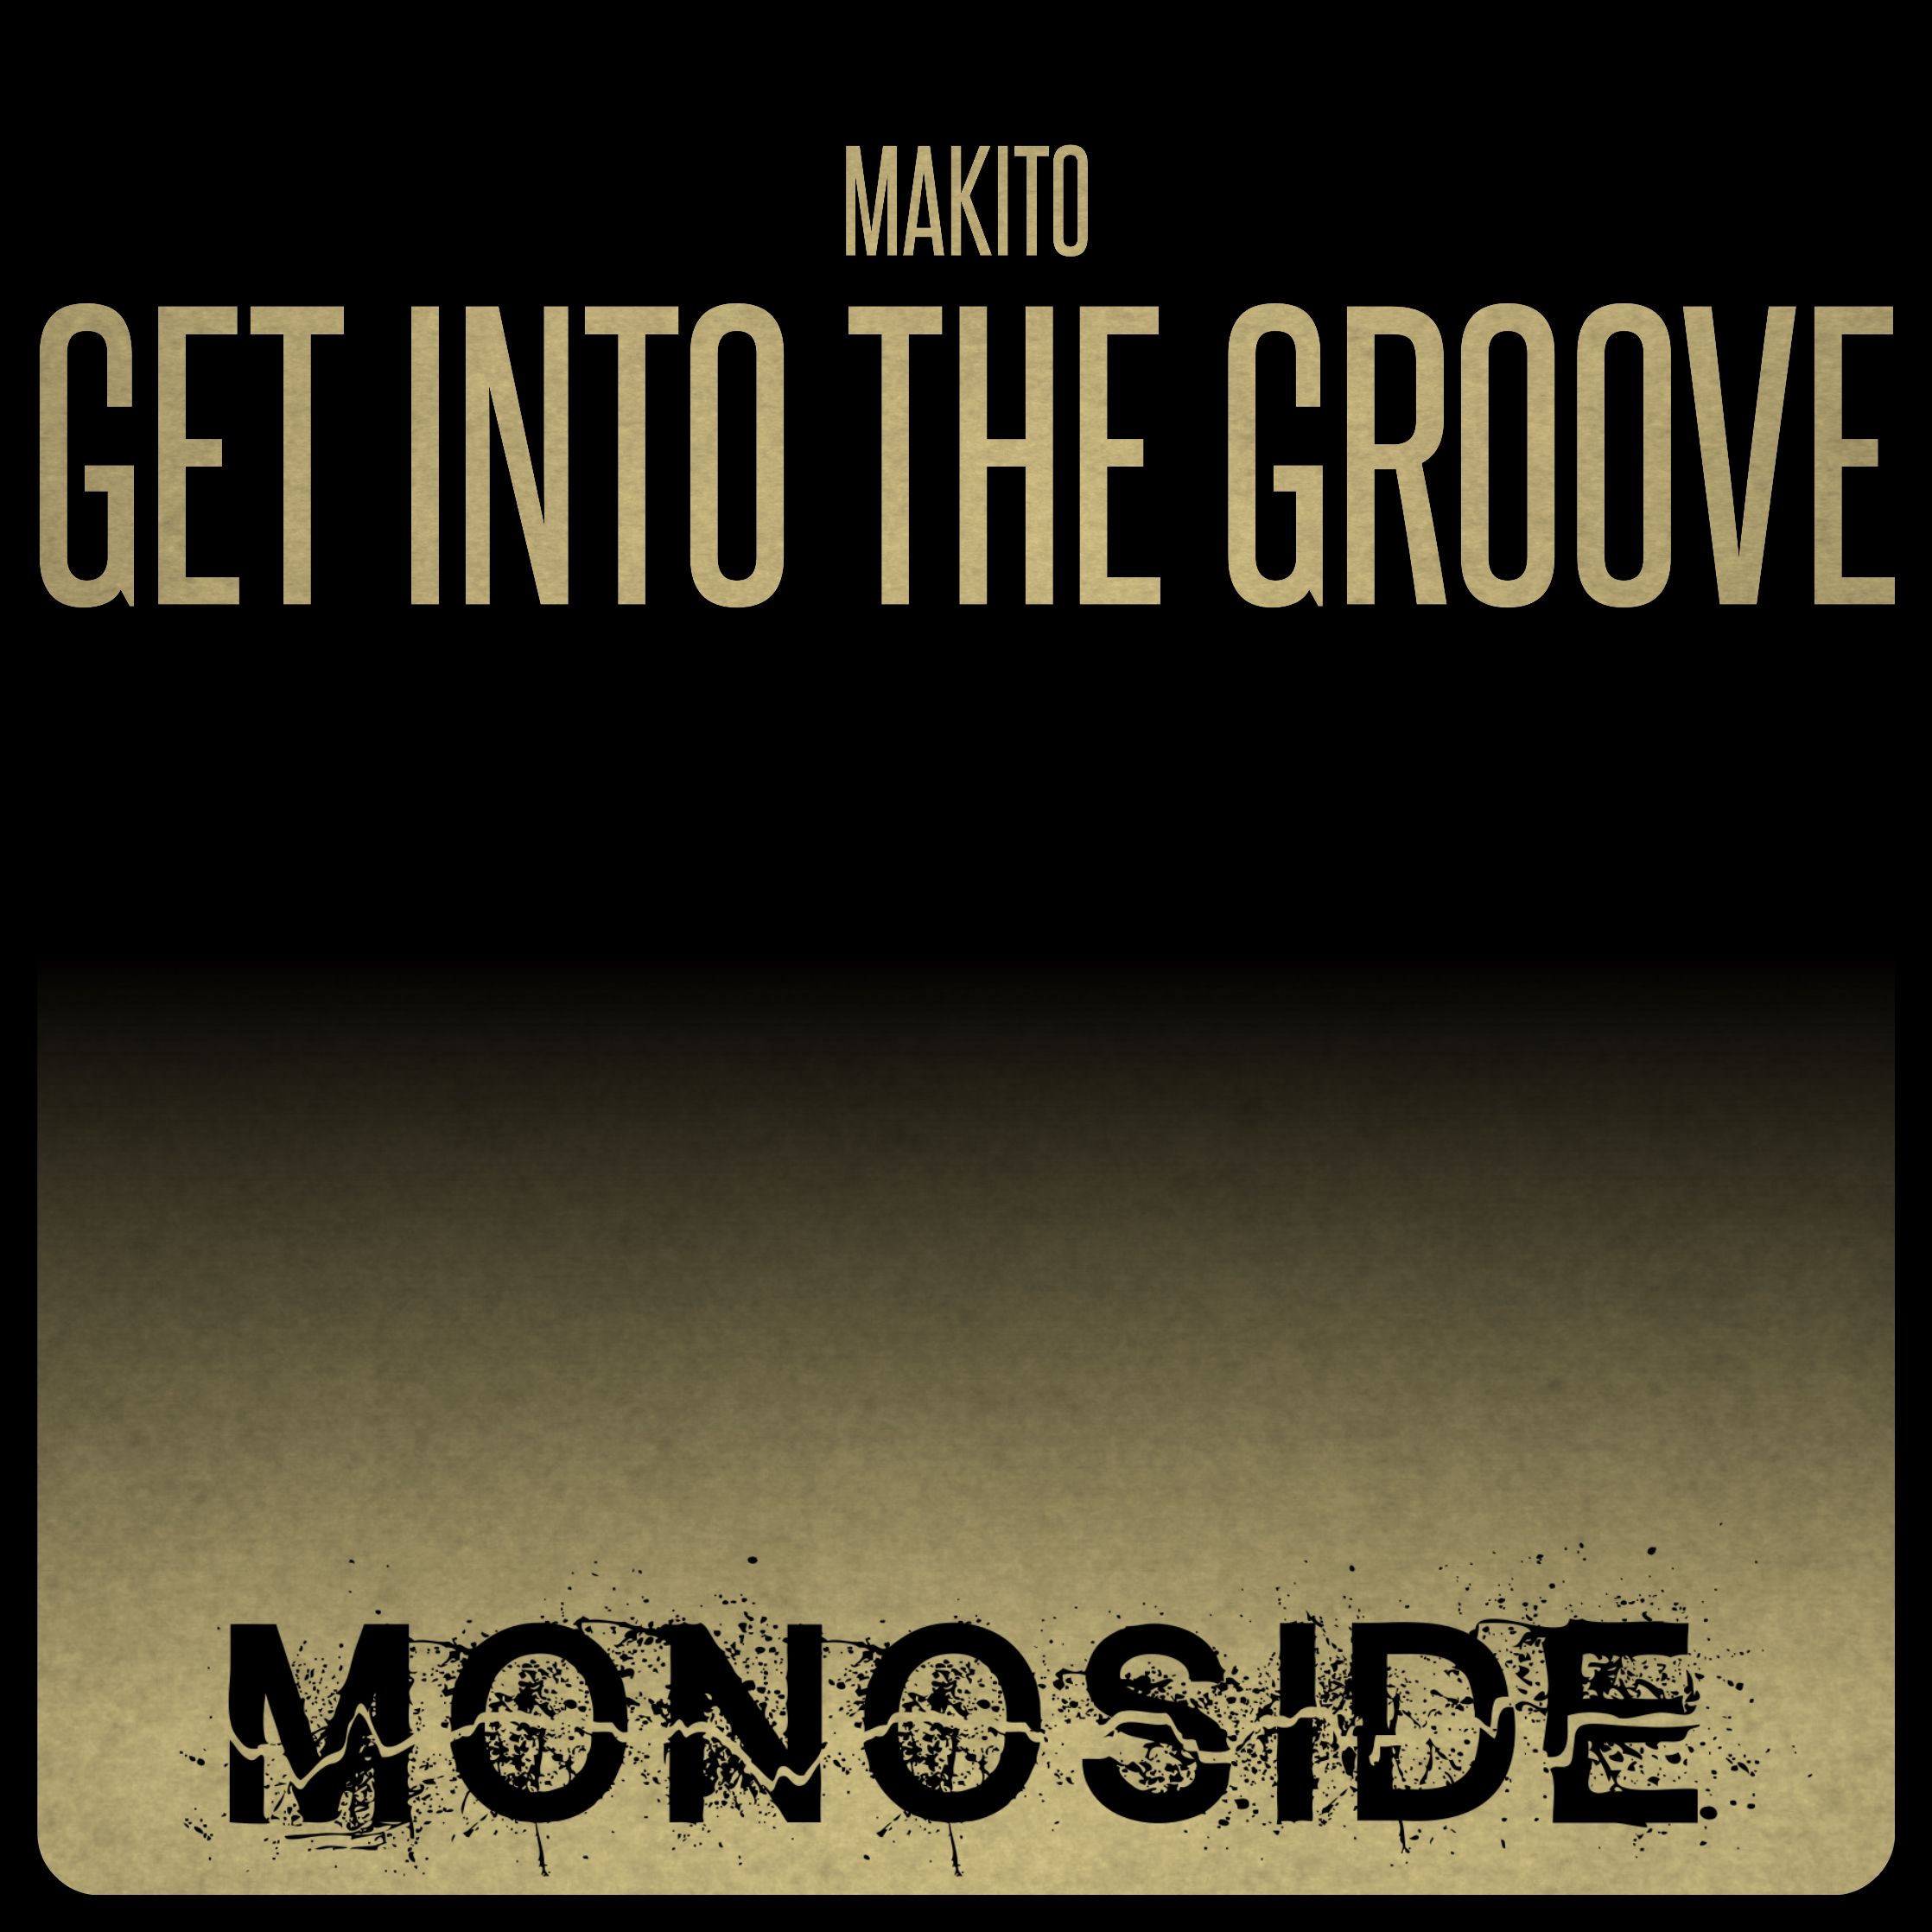 Preuzimanje datoteka Makito - GET INTO THE GROOVE // MS153